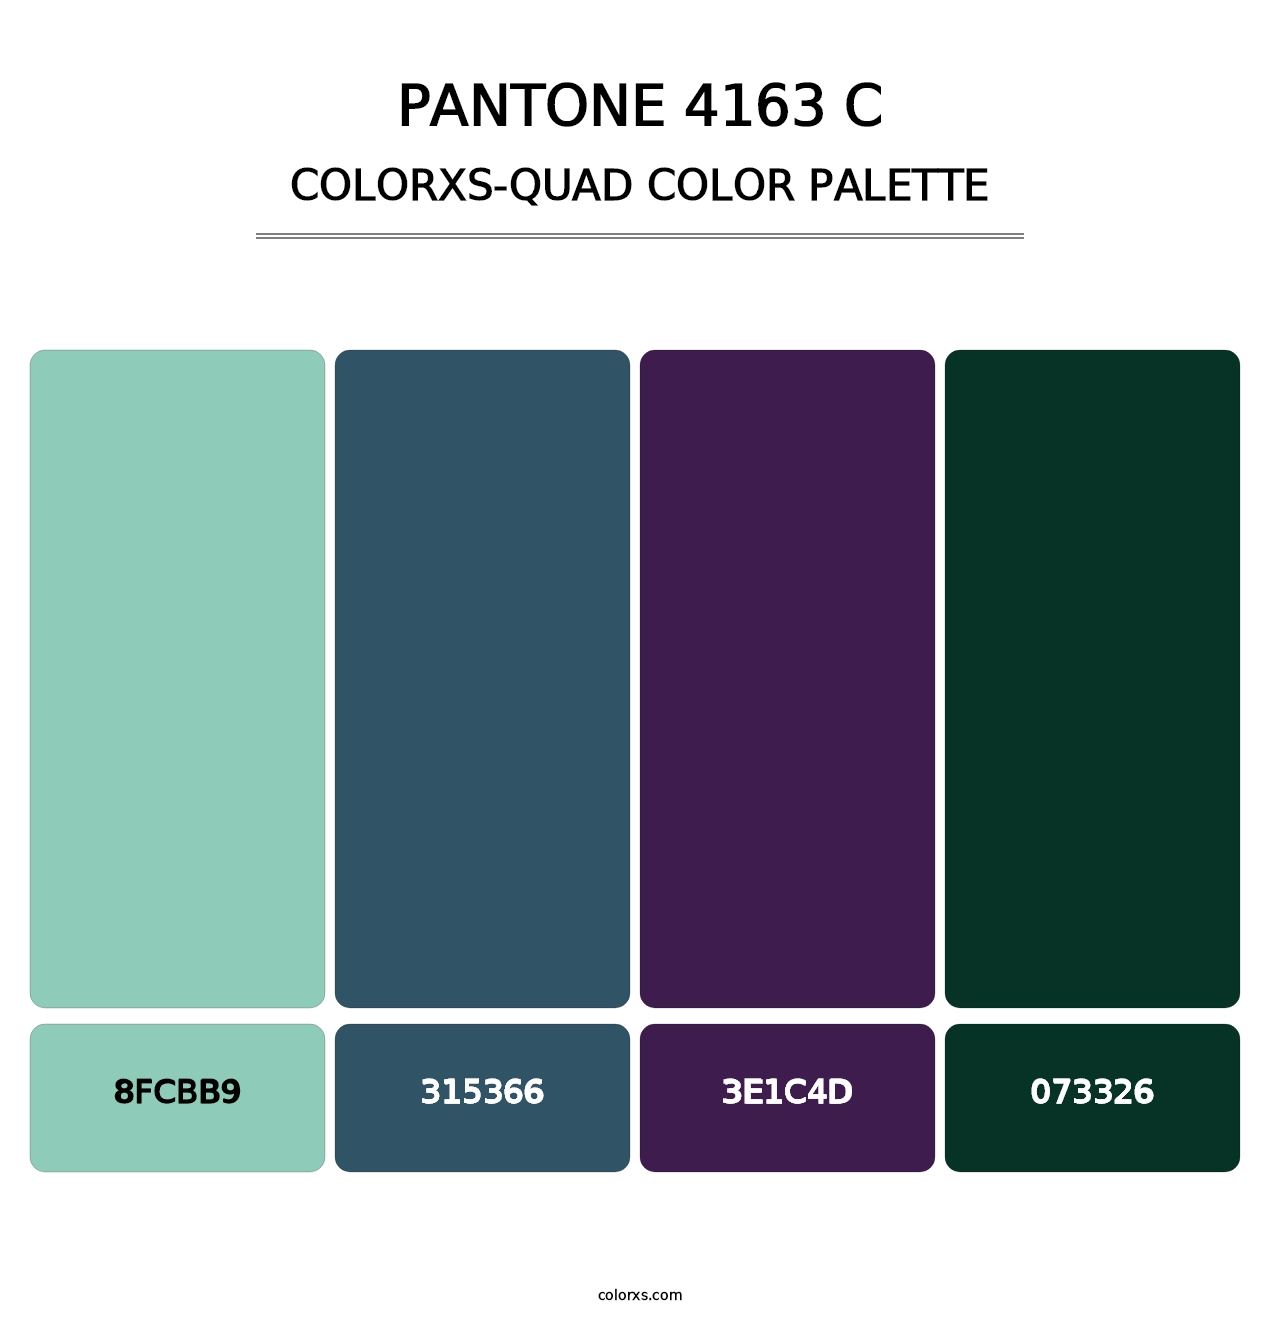 PANTONE 4163 C - Colorxs Quad Palette